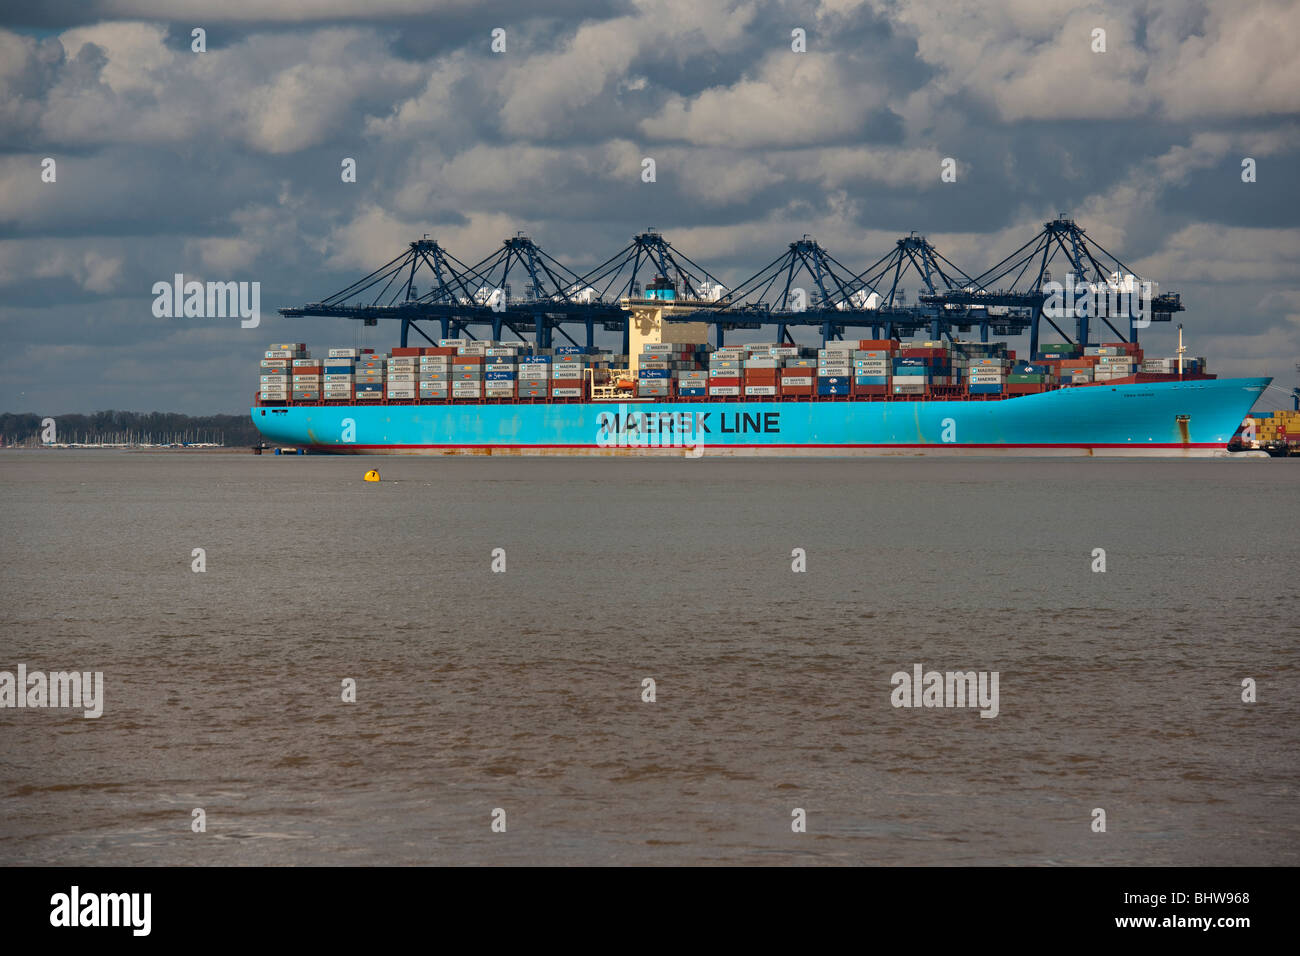 L'Ebba Maersk dans le port de Felixstowe, Suffolk, UK. Lancé en 2007, elle est plus grand porte-conteneurs au monde. Banque D'Images